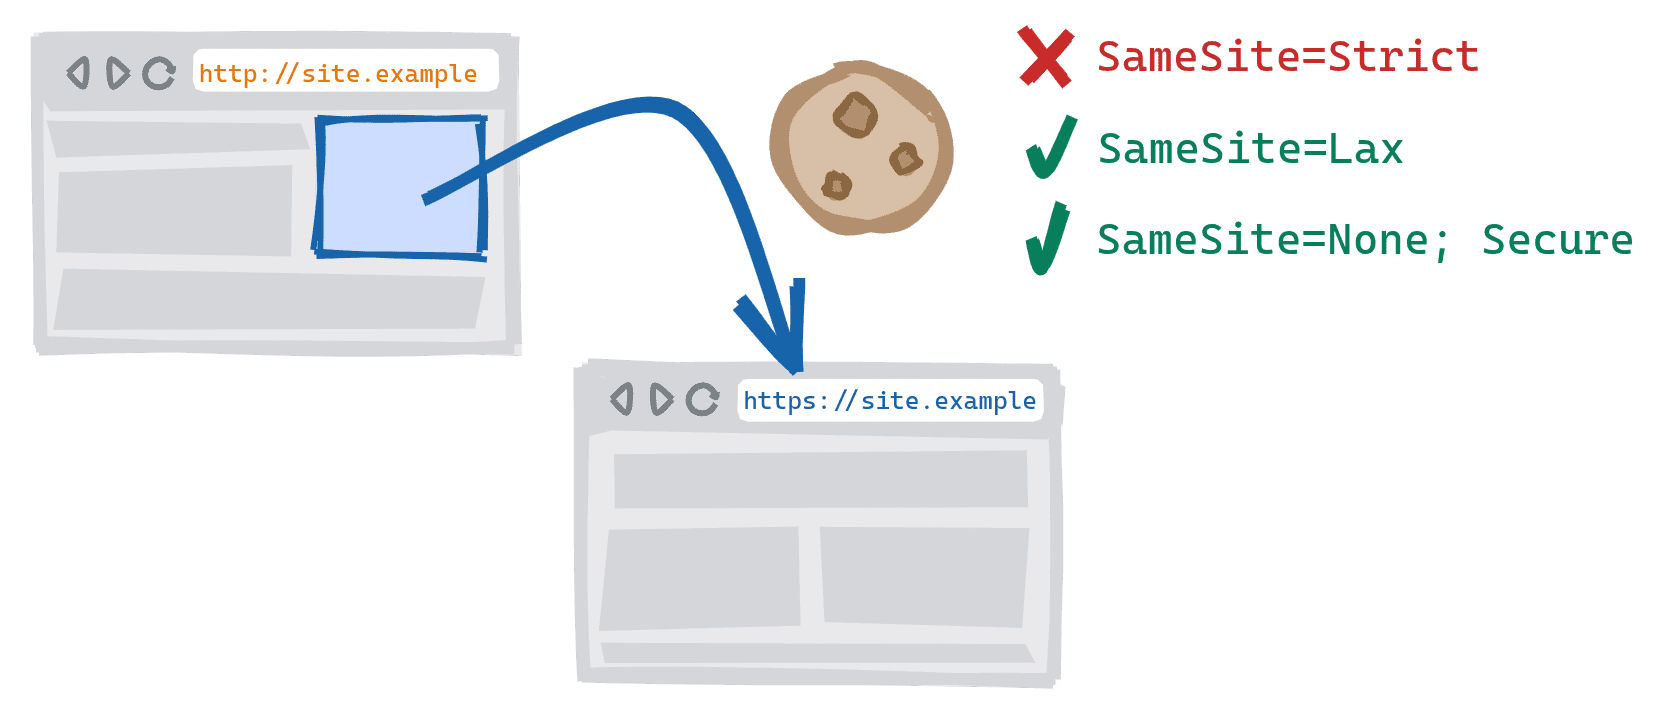 Una navegación entre esquemas activada por medio de un vínculo en la versión HTTP insegura de un sitio que dirige a la versión HTTPS segura. SameSite=Cookies estrictas bloqueadas, SameSite=Lax y SameSite=None Se permiten las cookies seguras.